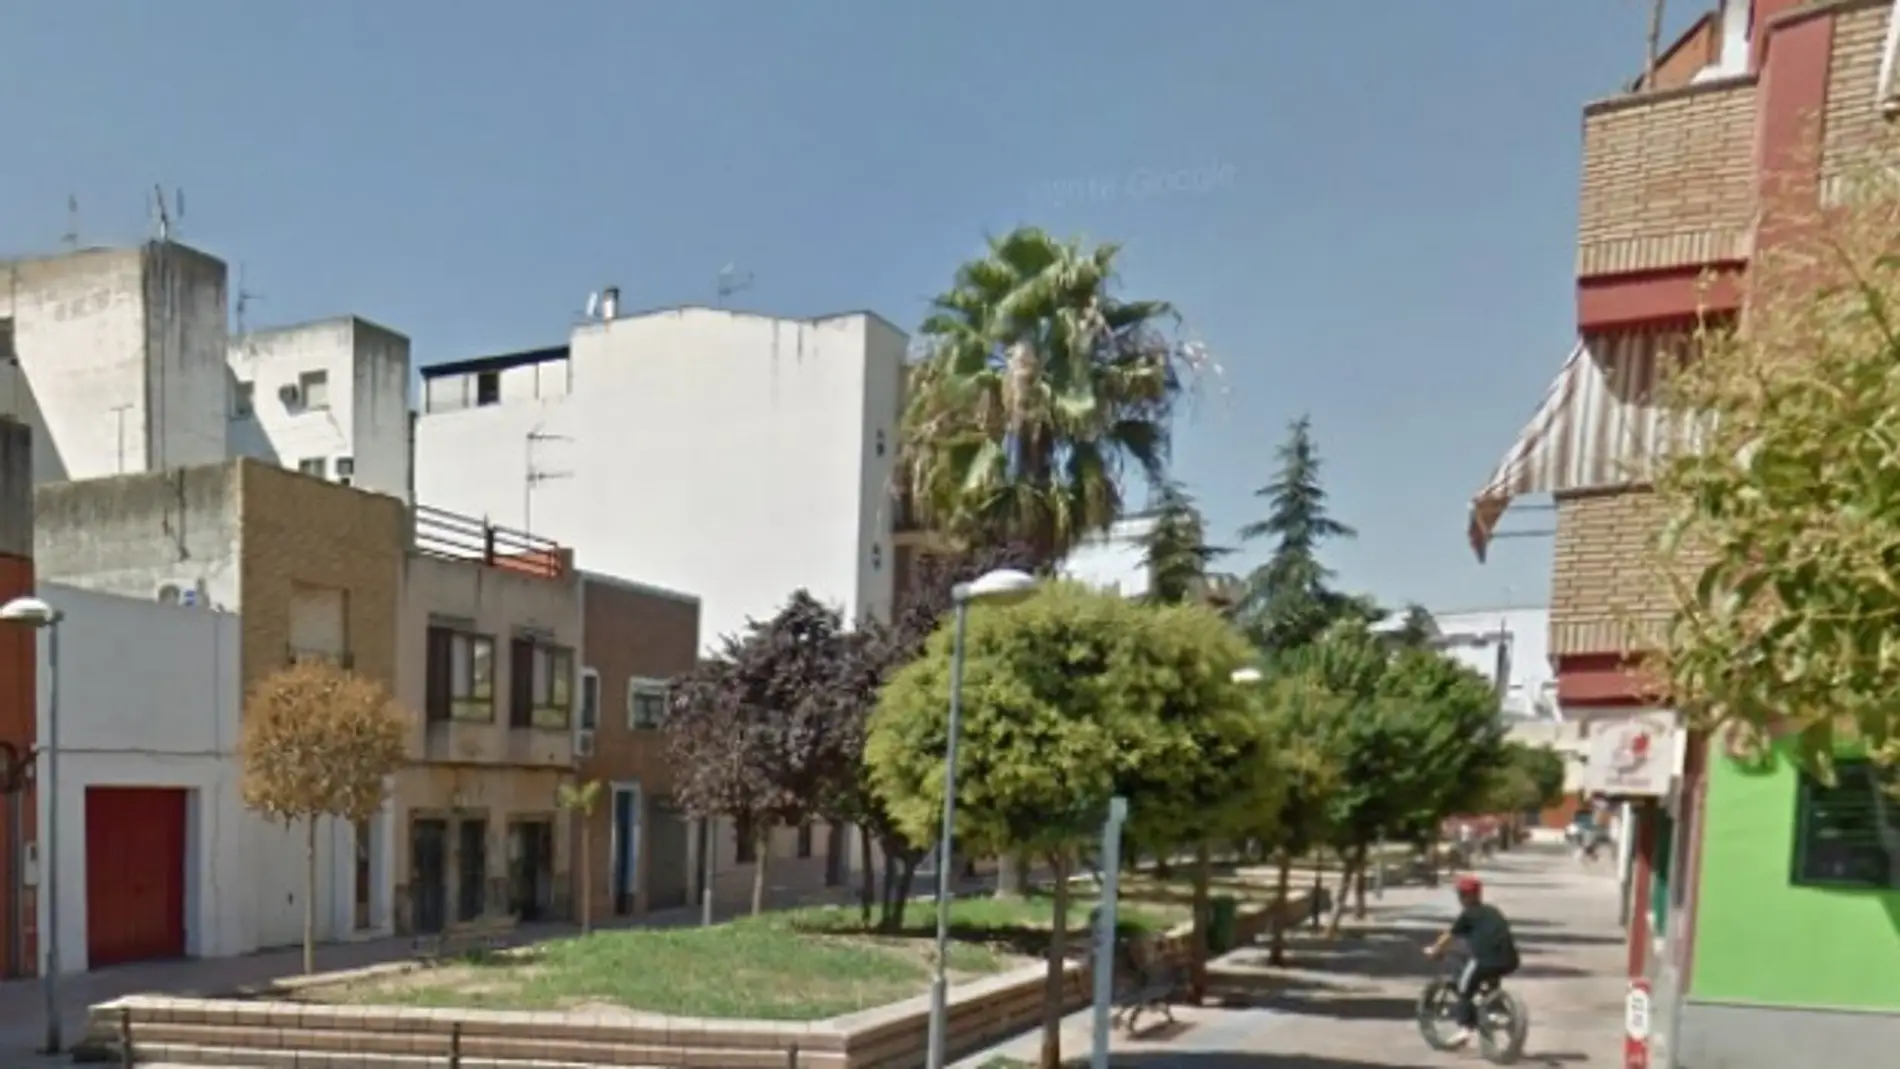  La Policía Nacional detiene a un hombre en Badajoz por robar diversos materiales de una obra